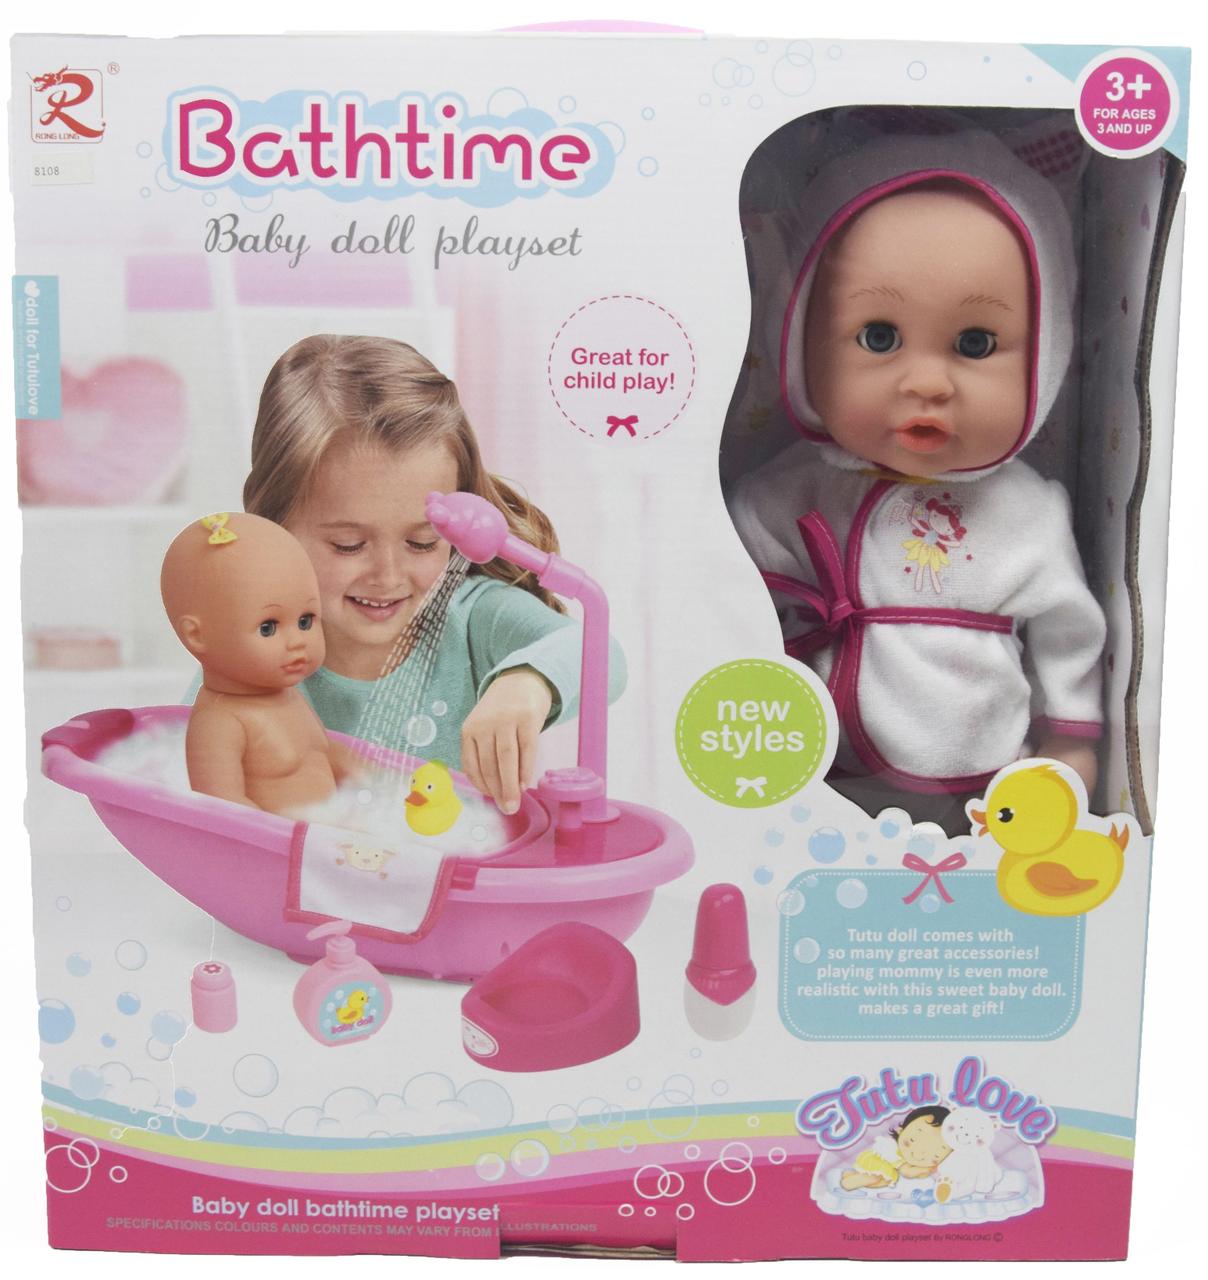 Кукла-пупс аналог baby born  с ванночкой "Bathtime" Rong Long, арт. 8108